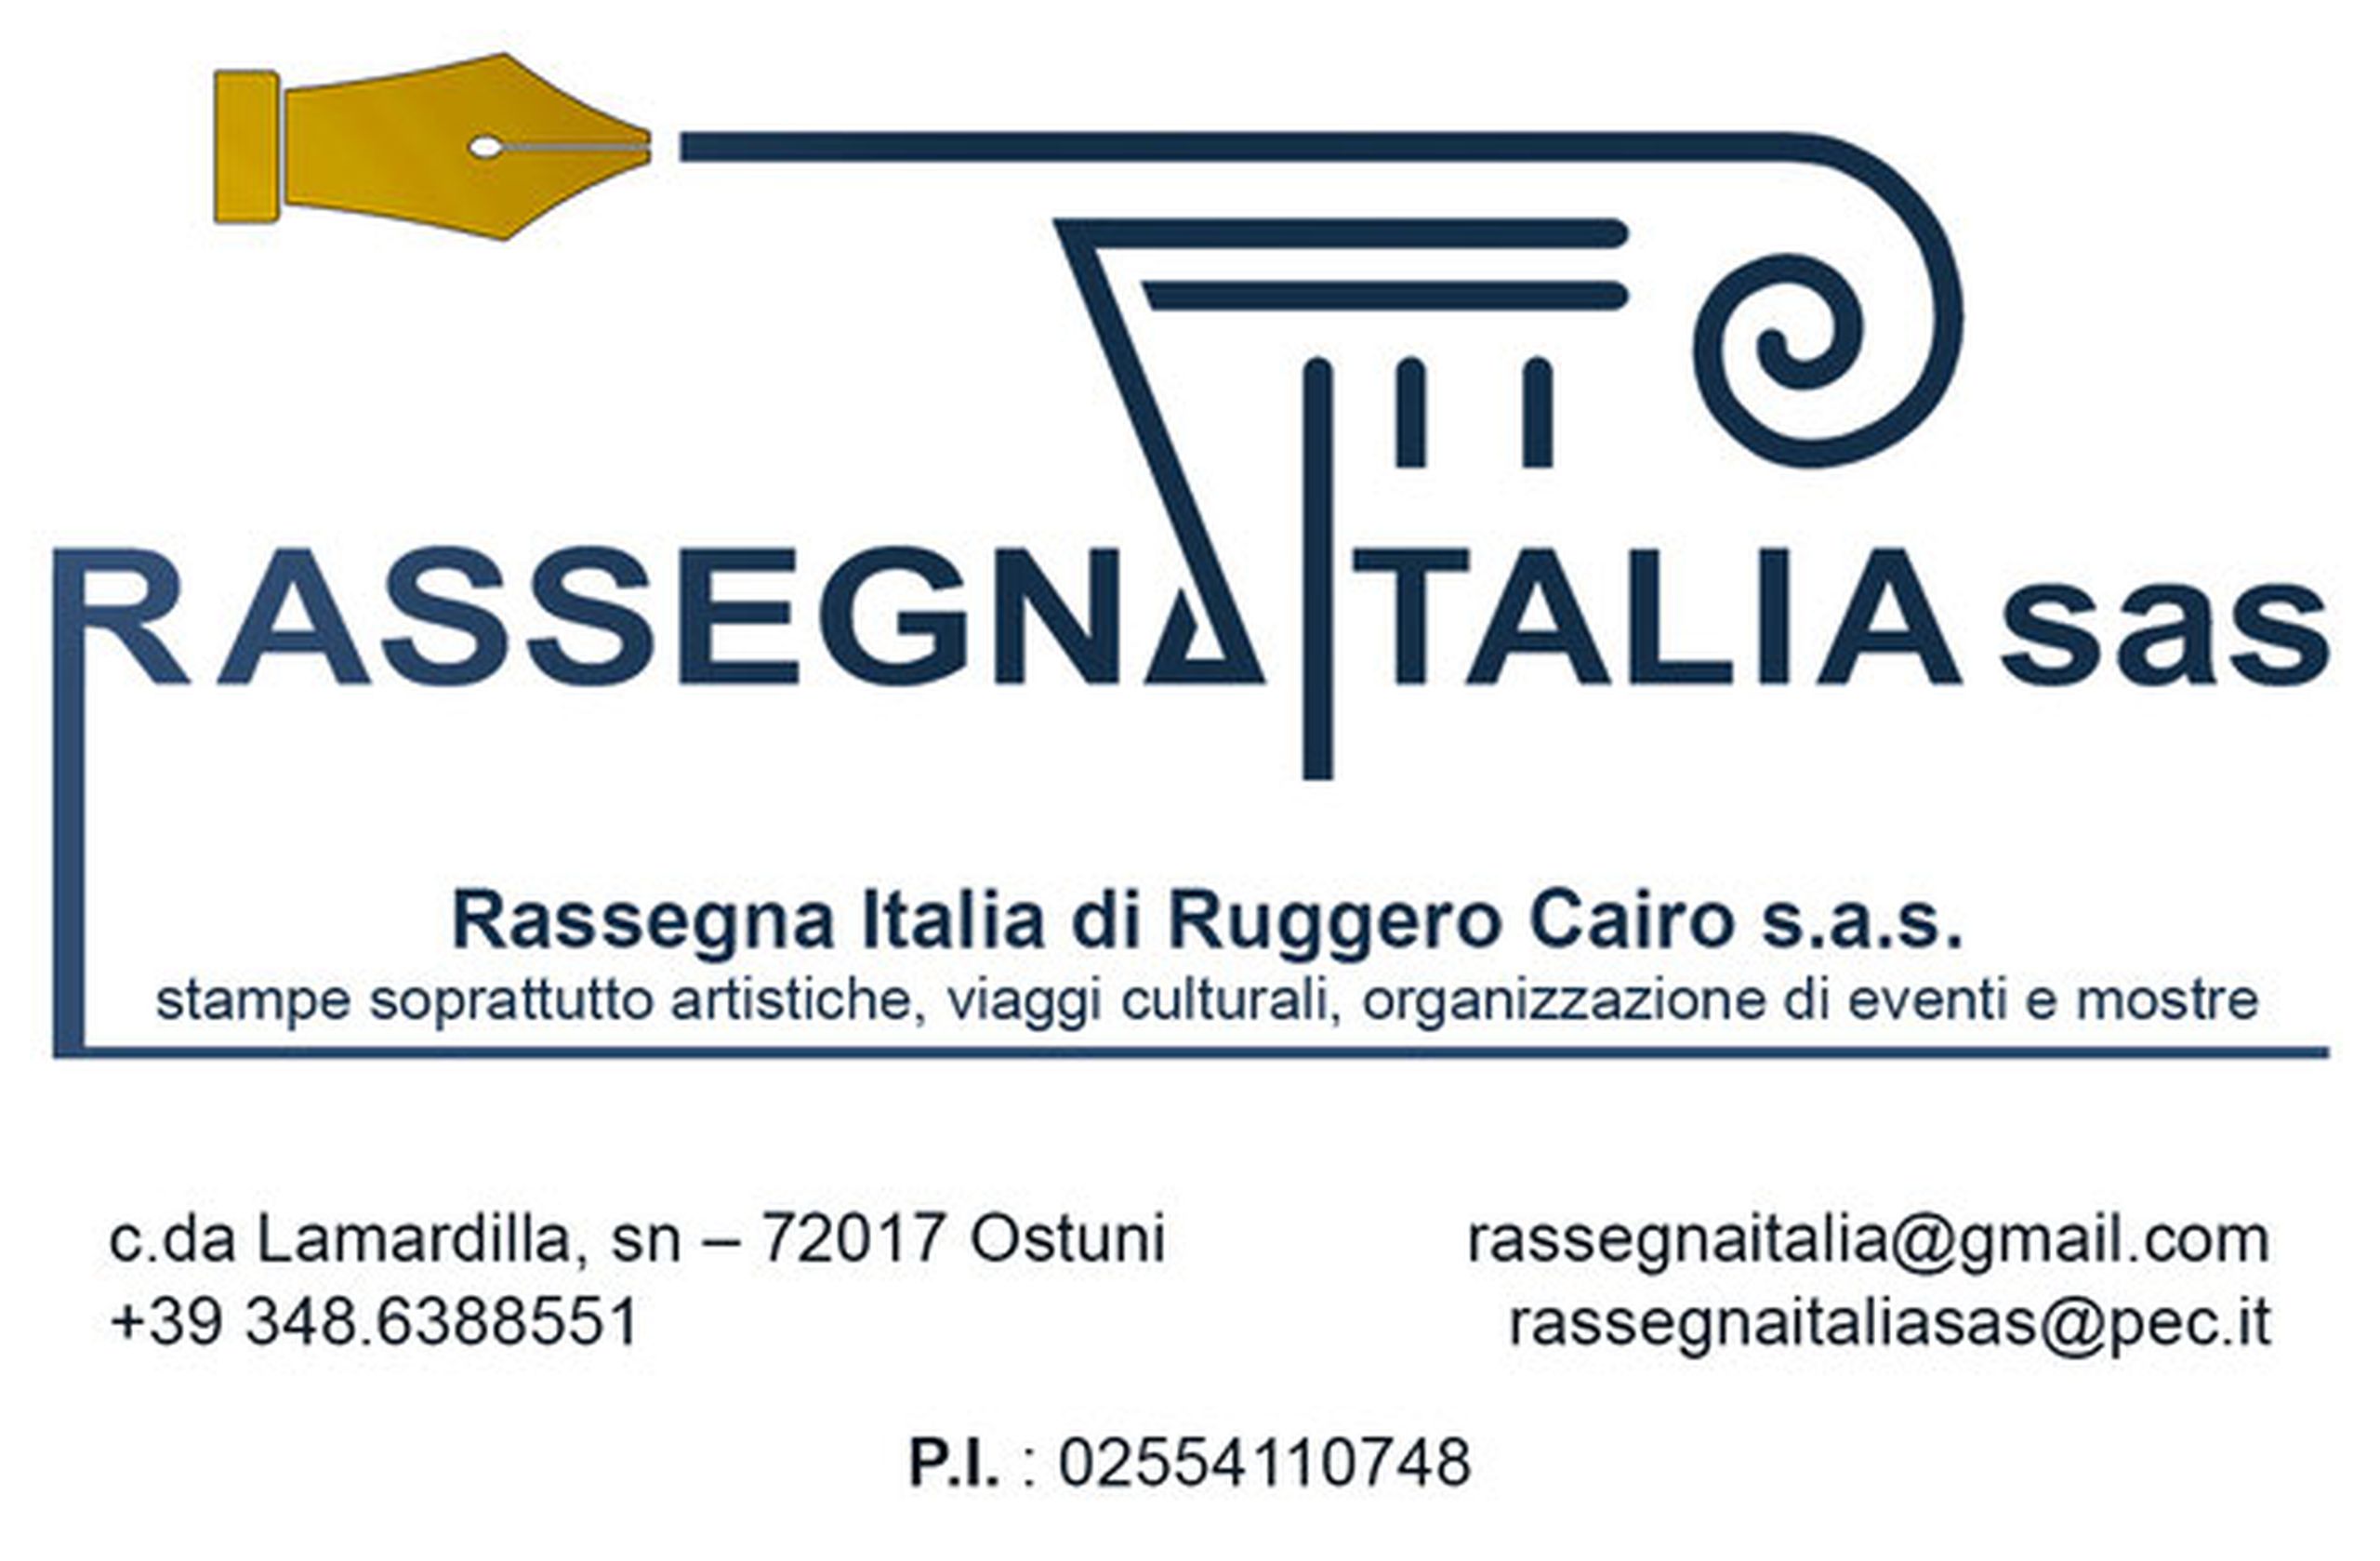 Logo Rassegna Italia s.a.s.